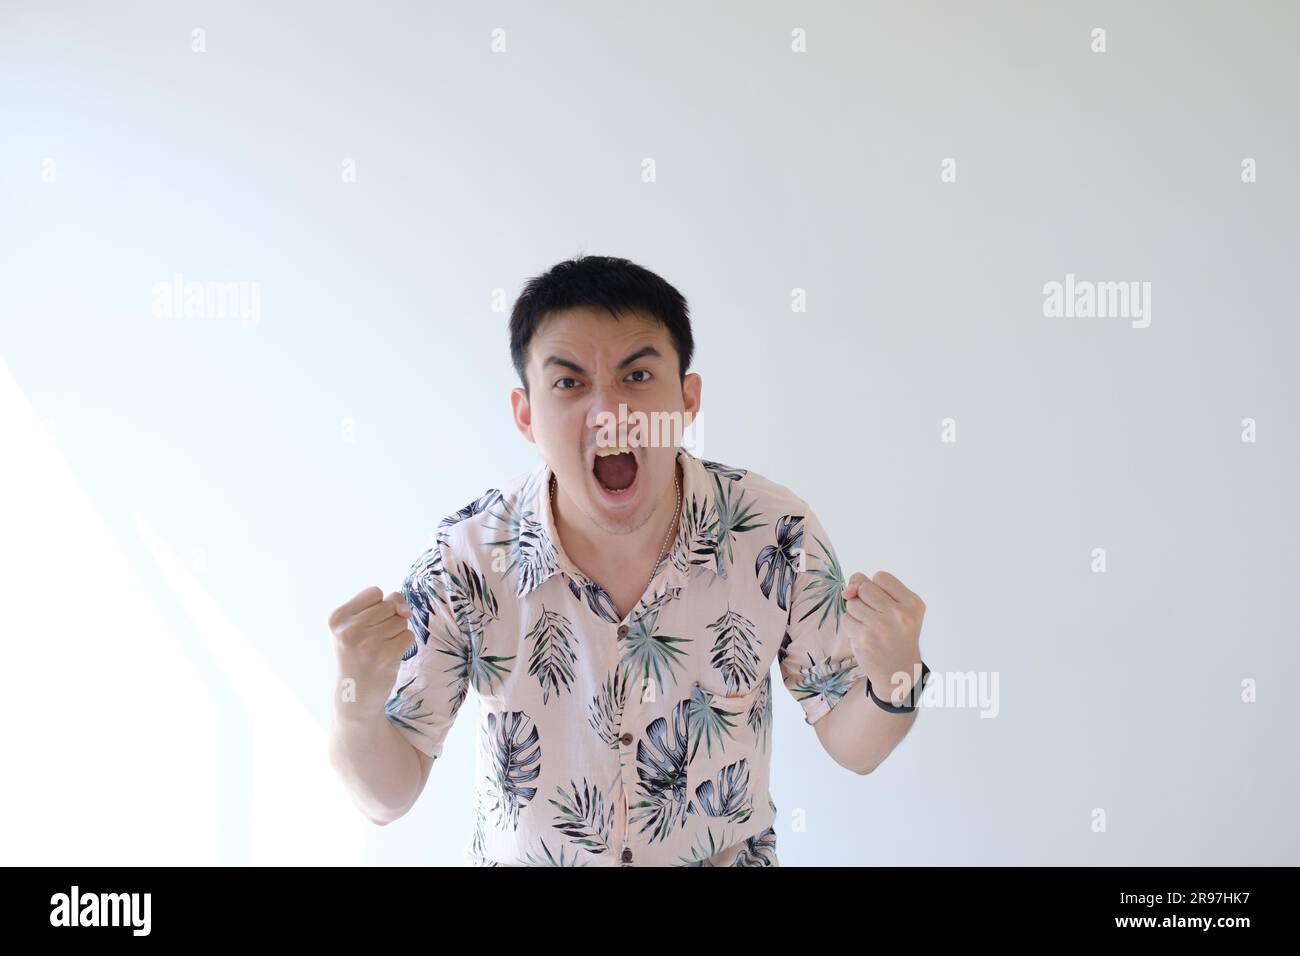 Ein junger asiatischer Mann, der ein rosafarbenes Hemd mit tropischen Mustern und einer Smartwatch am linken Handgelenk trägt, ist glücklich und aufgeregt und zeigt seinen Ausdruck Stockfoto